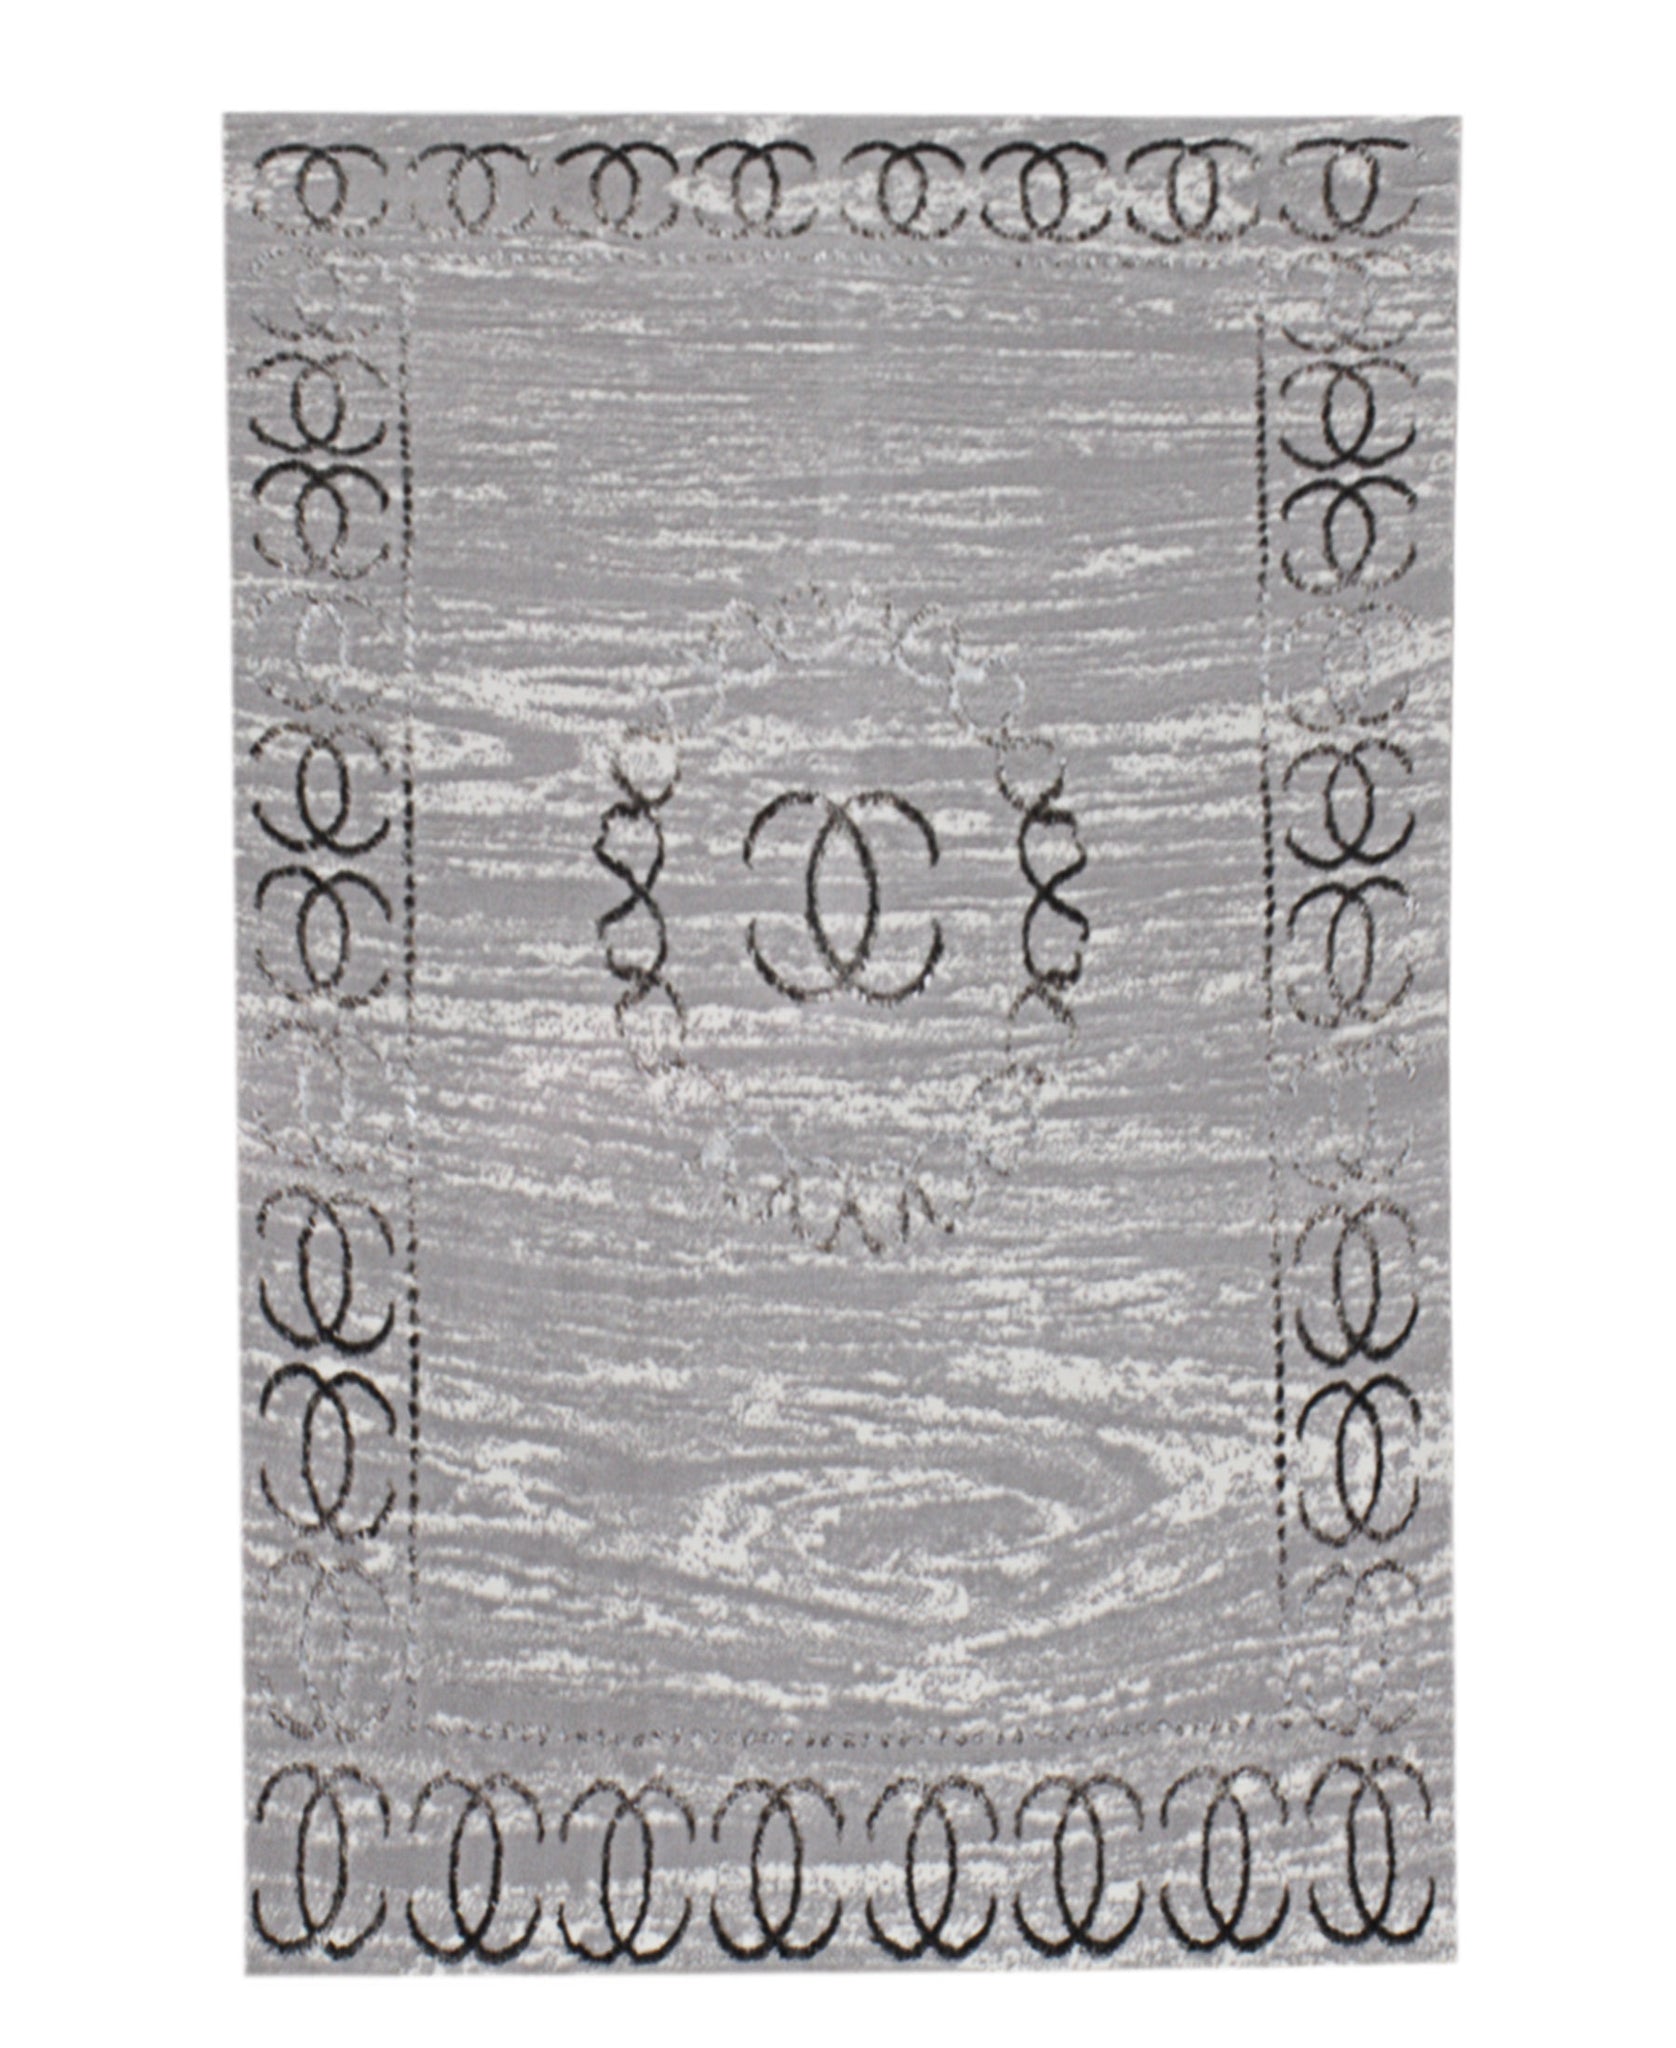 Bodrum Channel Carpet 1200mm X 1600mm - Dark Grey